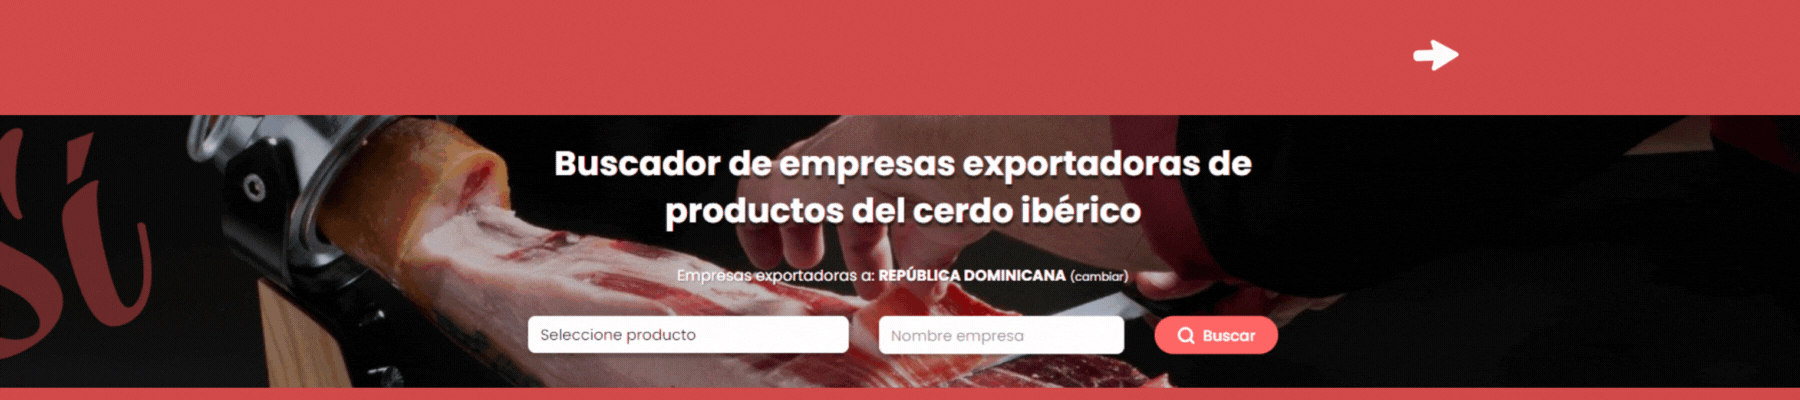 spanish-ibericos.com: el buscador de empresas exportadoras de productos del cerdo ibérico